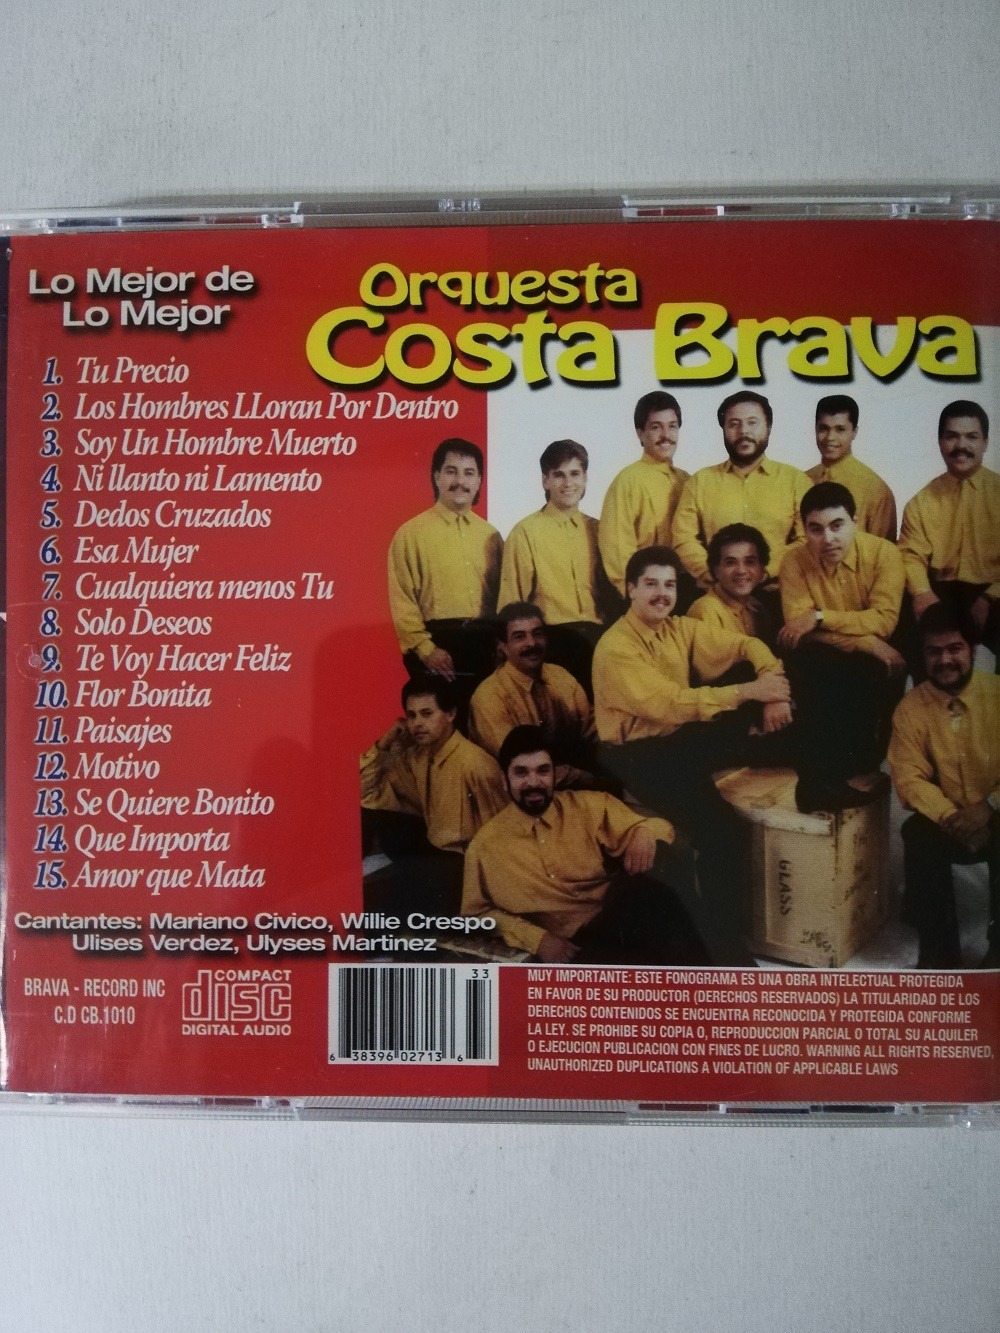 Imagen CD COSTA BRAVA - LO MEJOR DE LO MEJOR 2